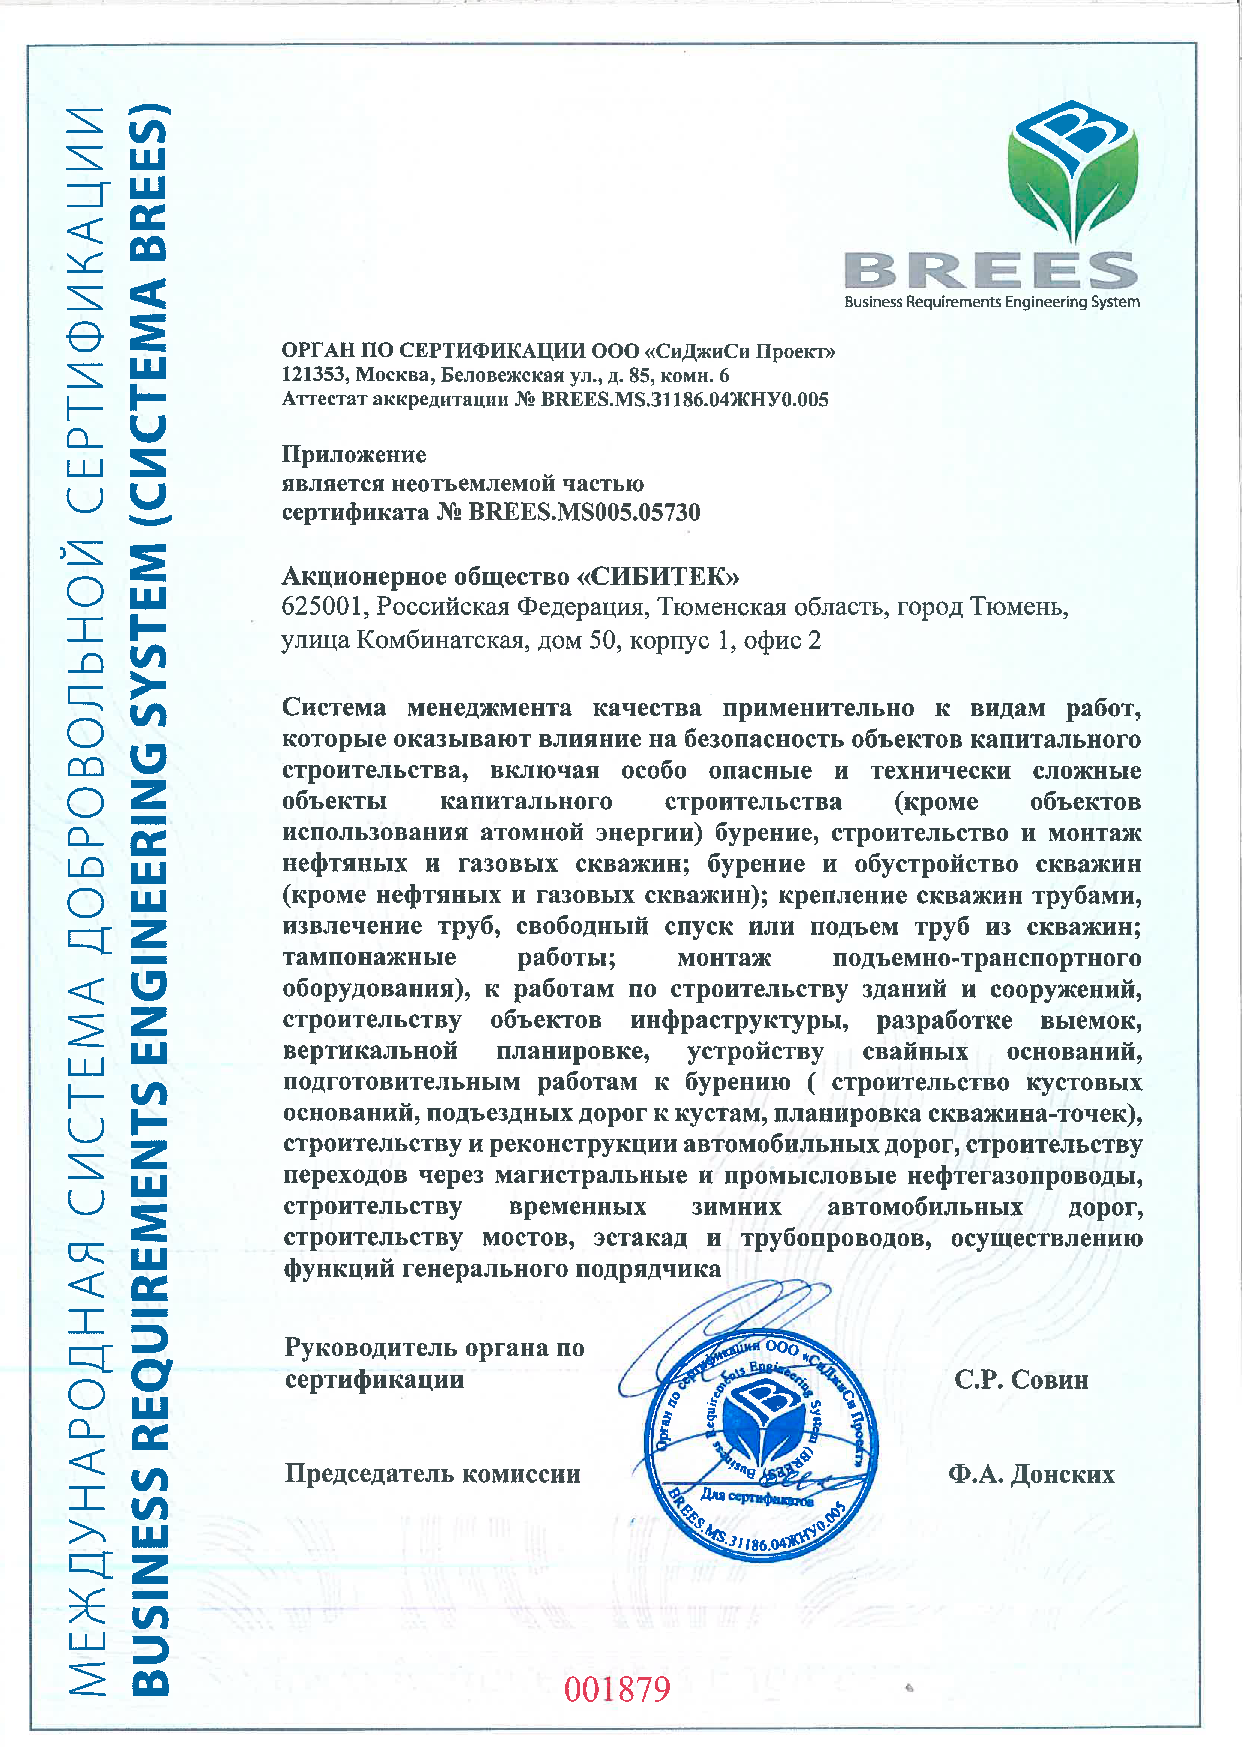 Приложение к сертификату соответствия №BREES.MS005.05730